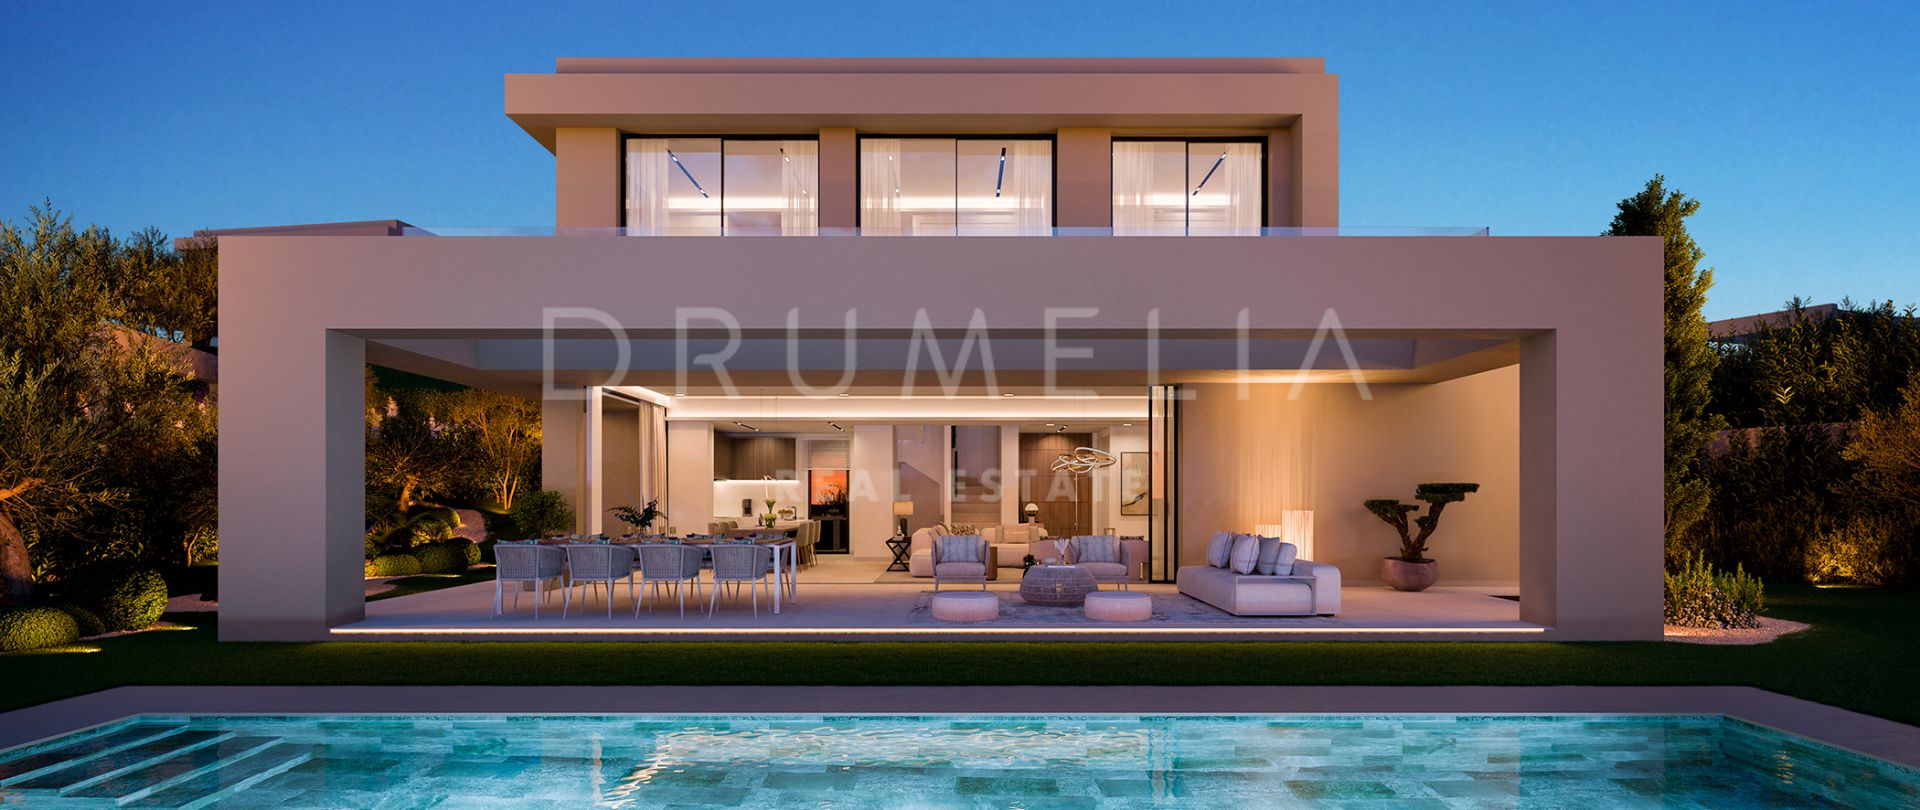 Villa de lujo moderna y elegante a estrenar en la zona de Benahavis (proyecto).